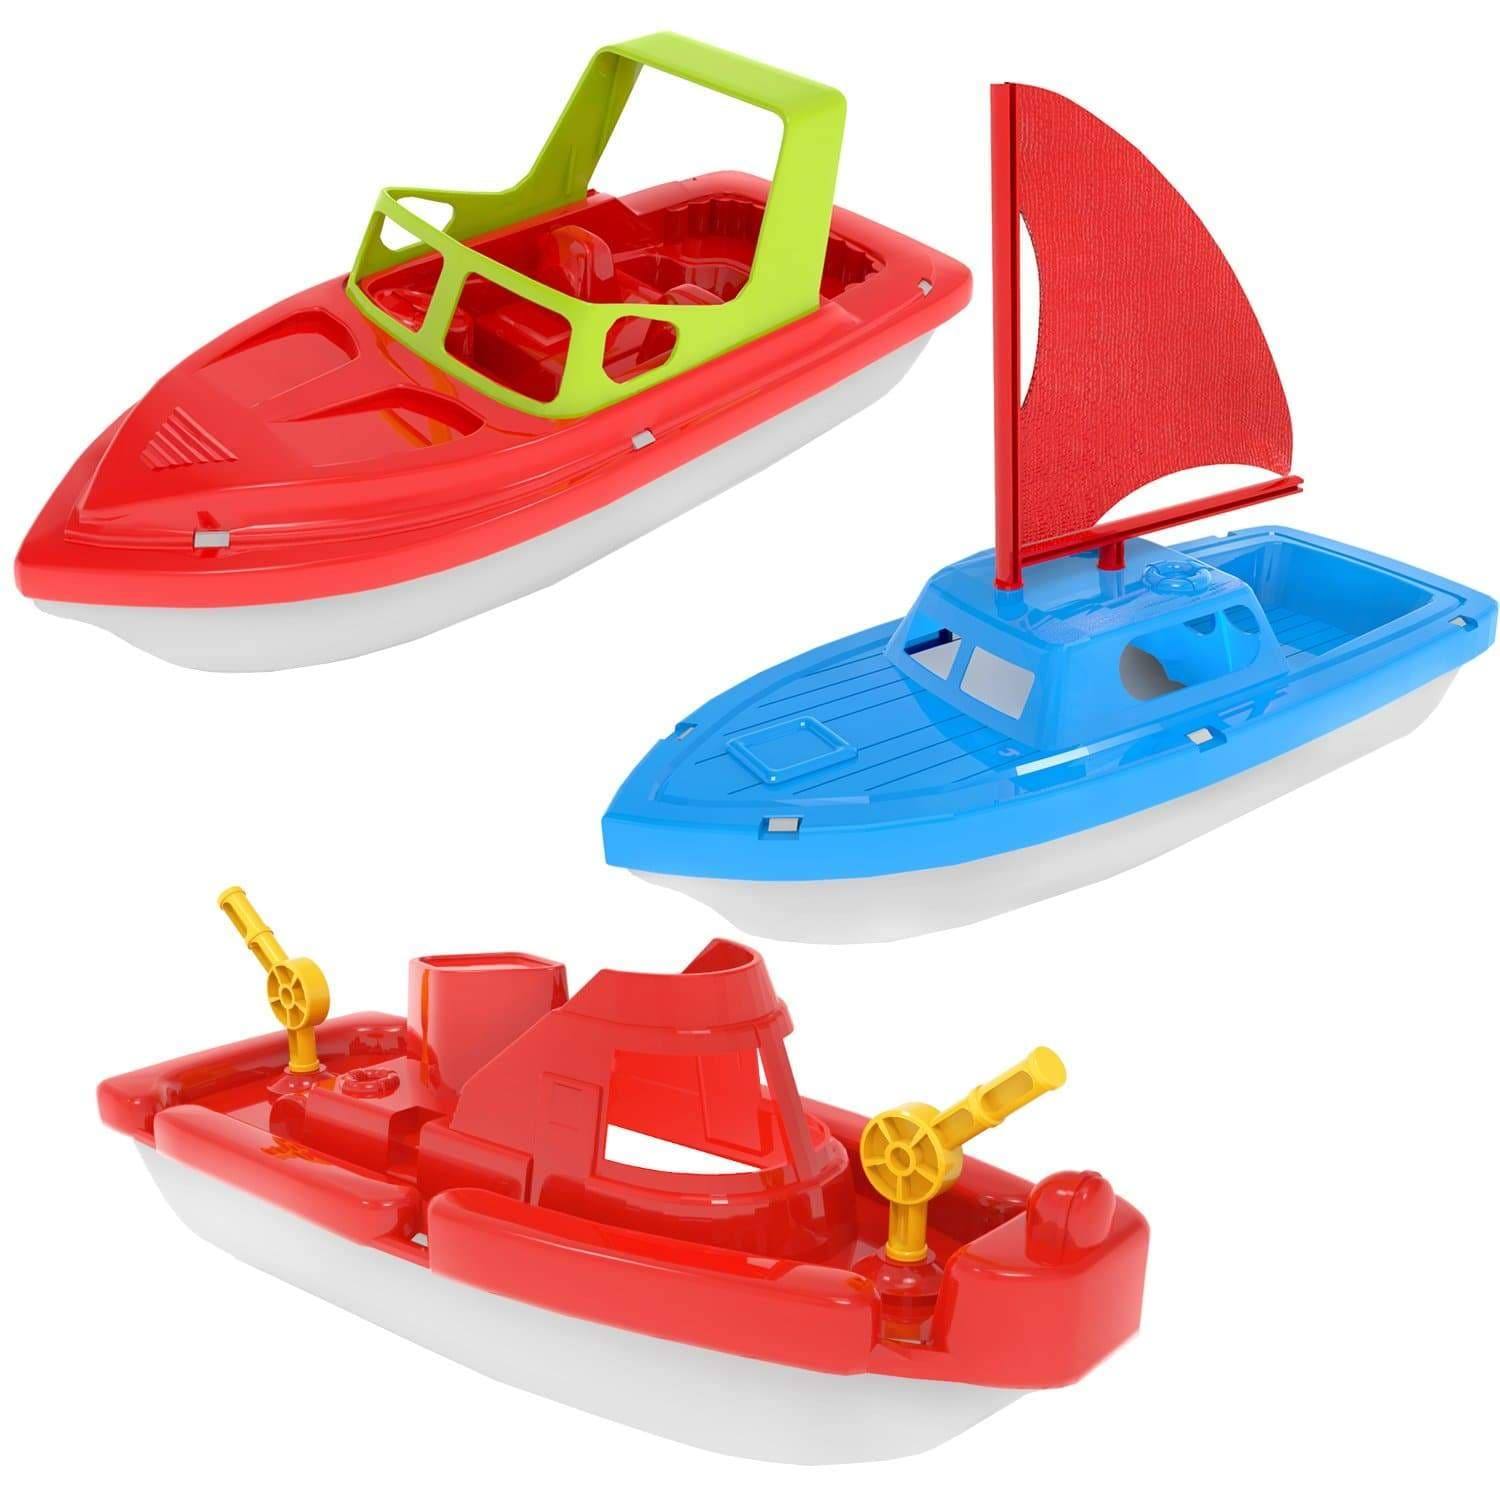 Fun Little Toys Bath Boat Toy